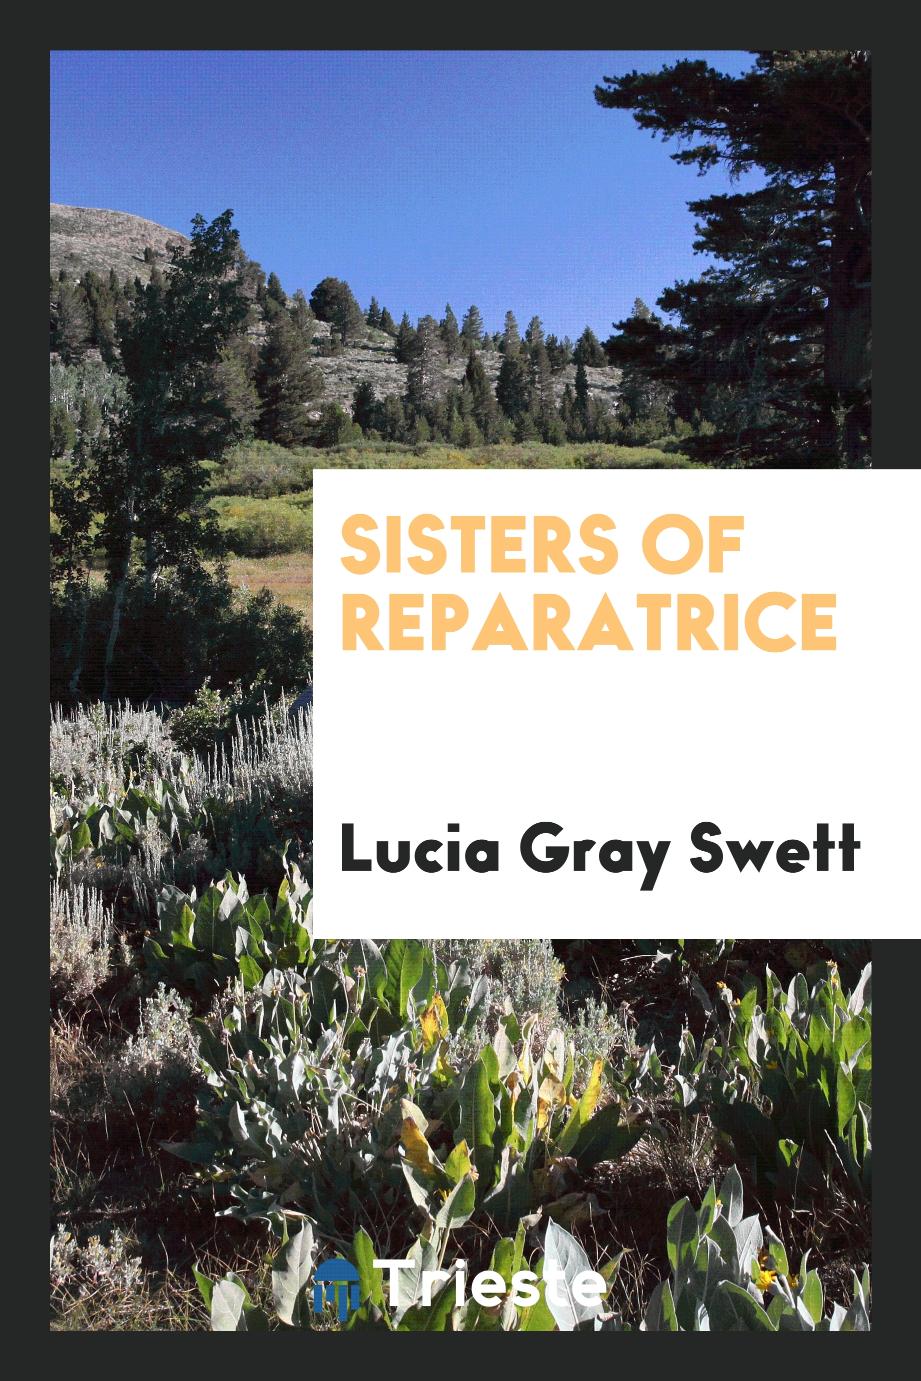 Sisters of Reparatrice